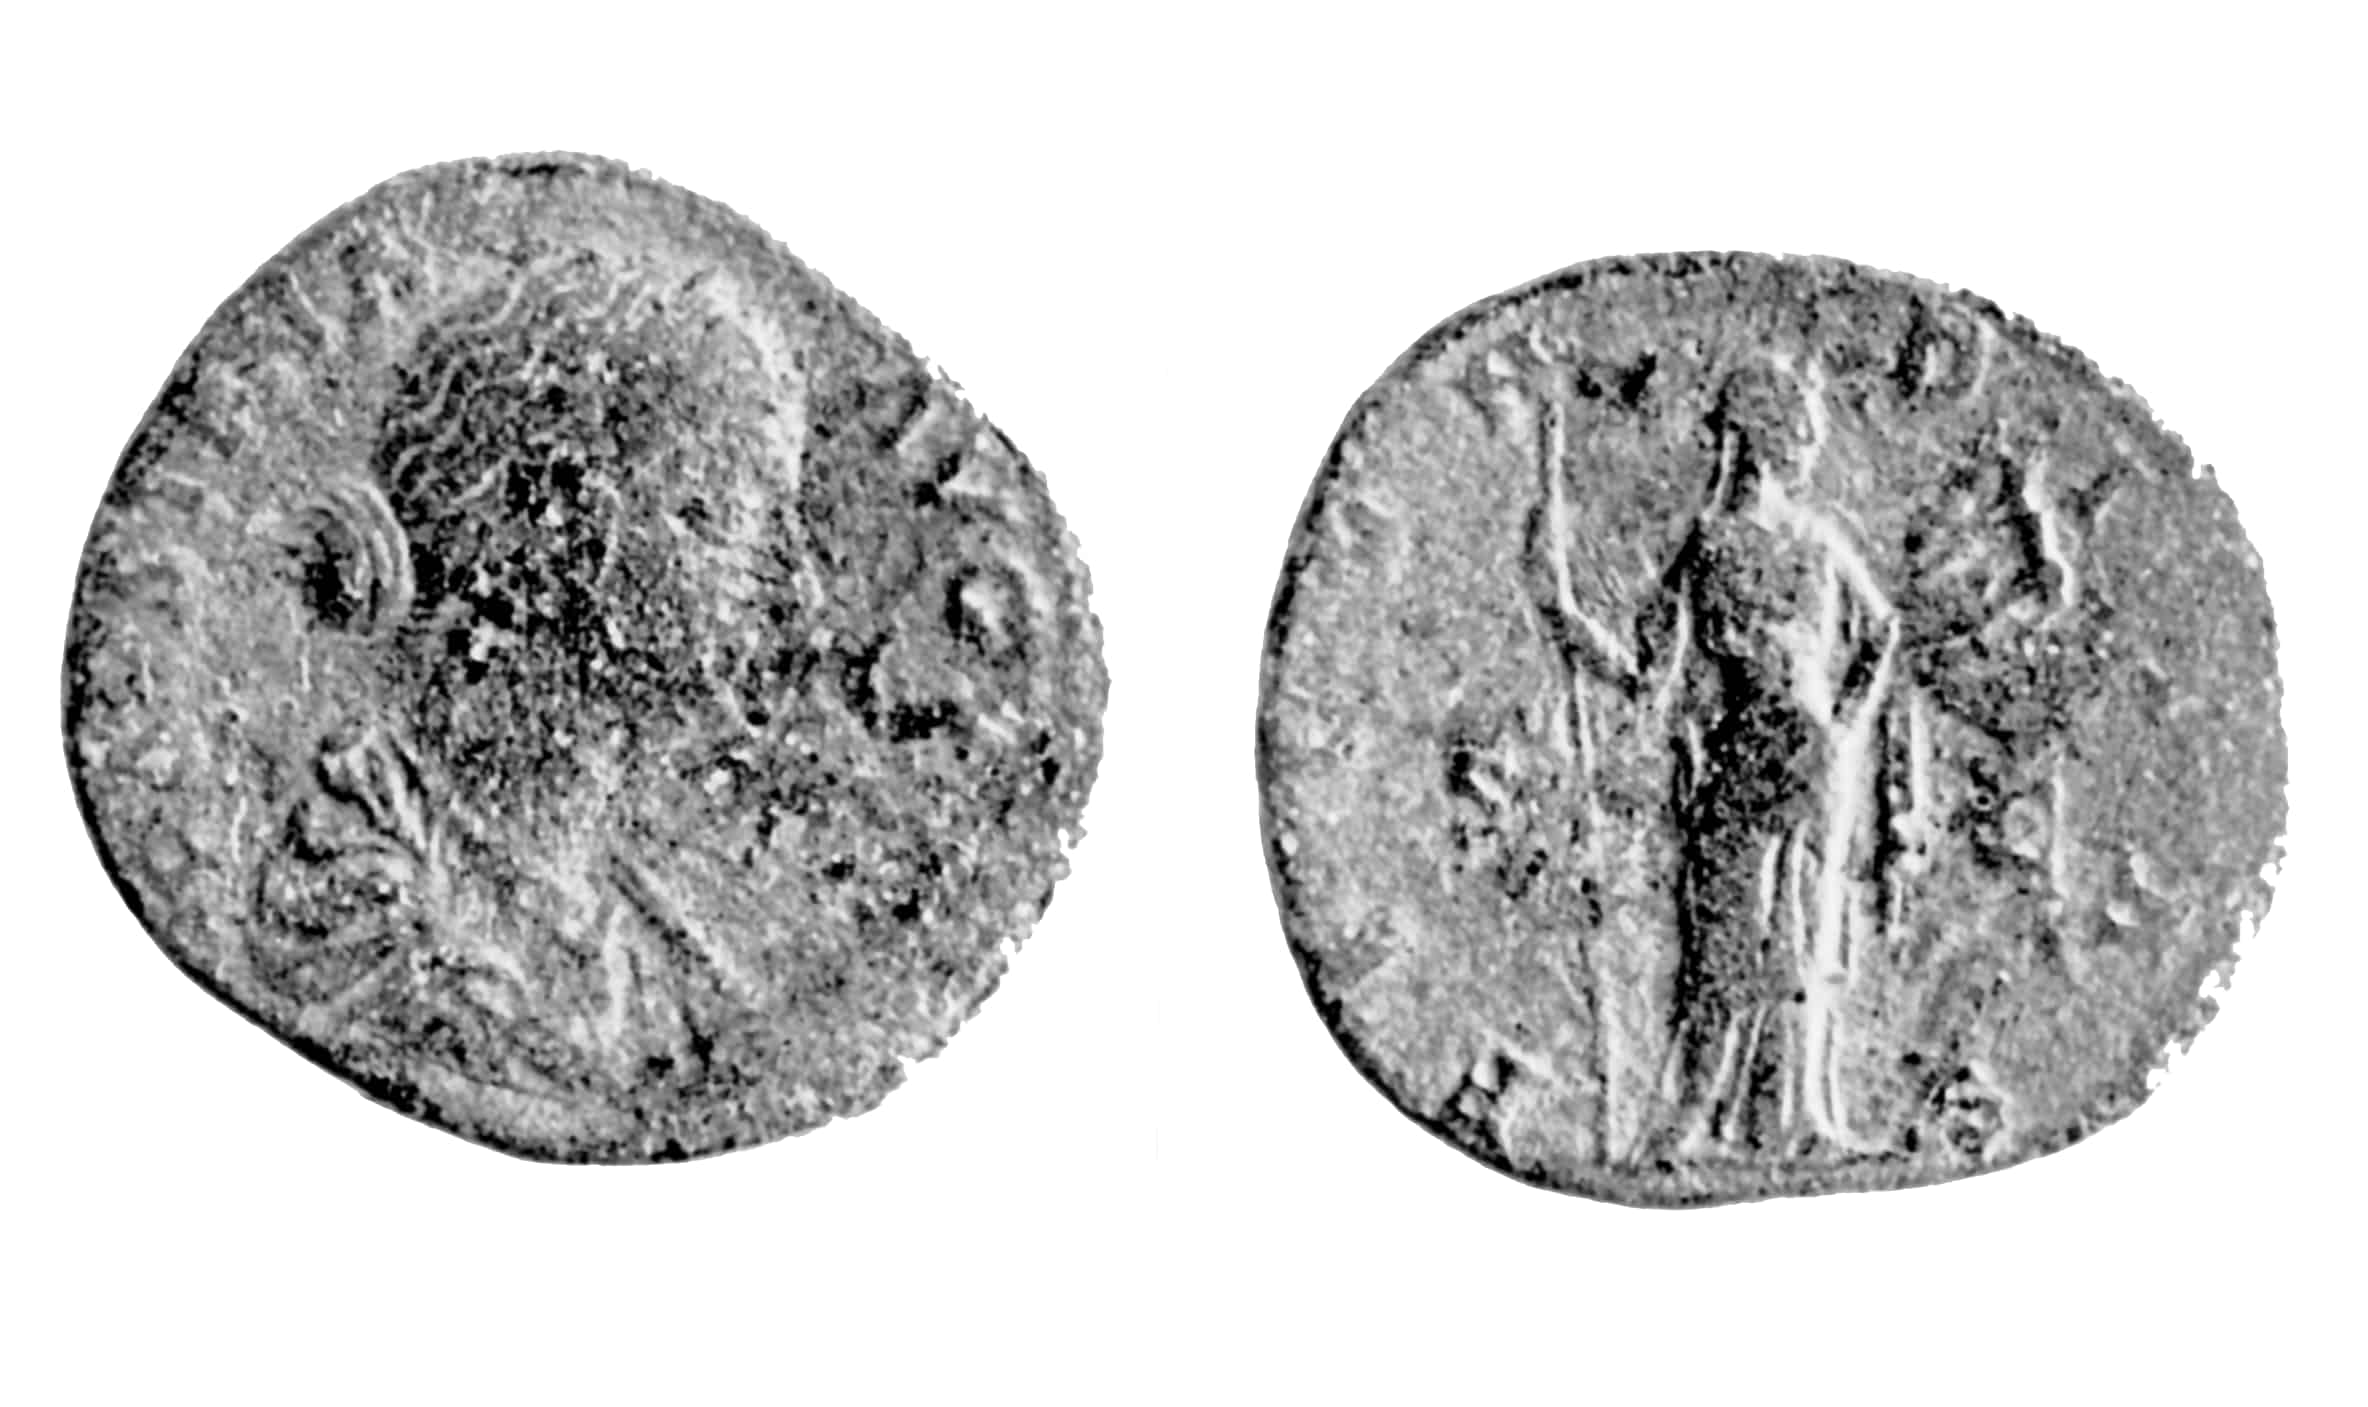 moneta - sesterzio (II)